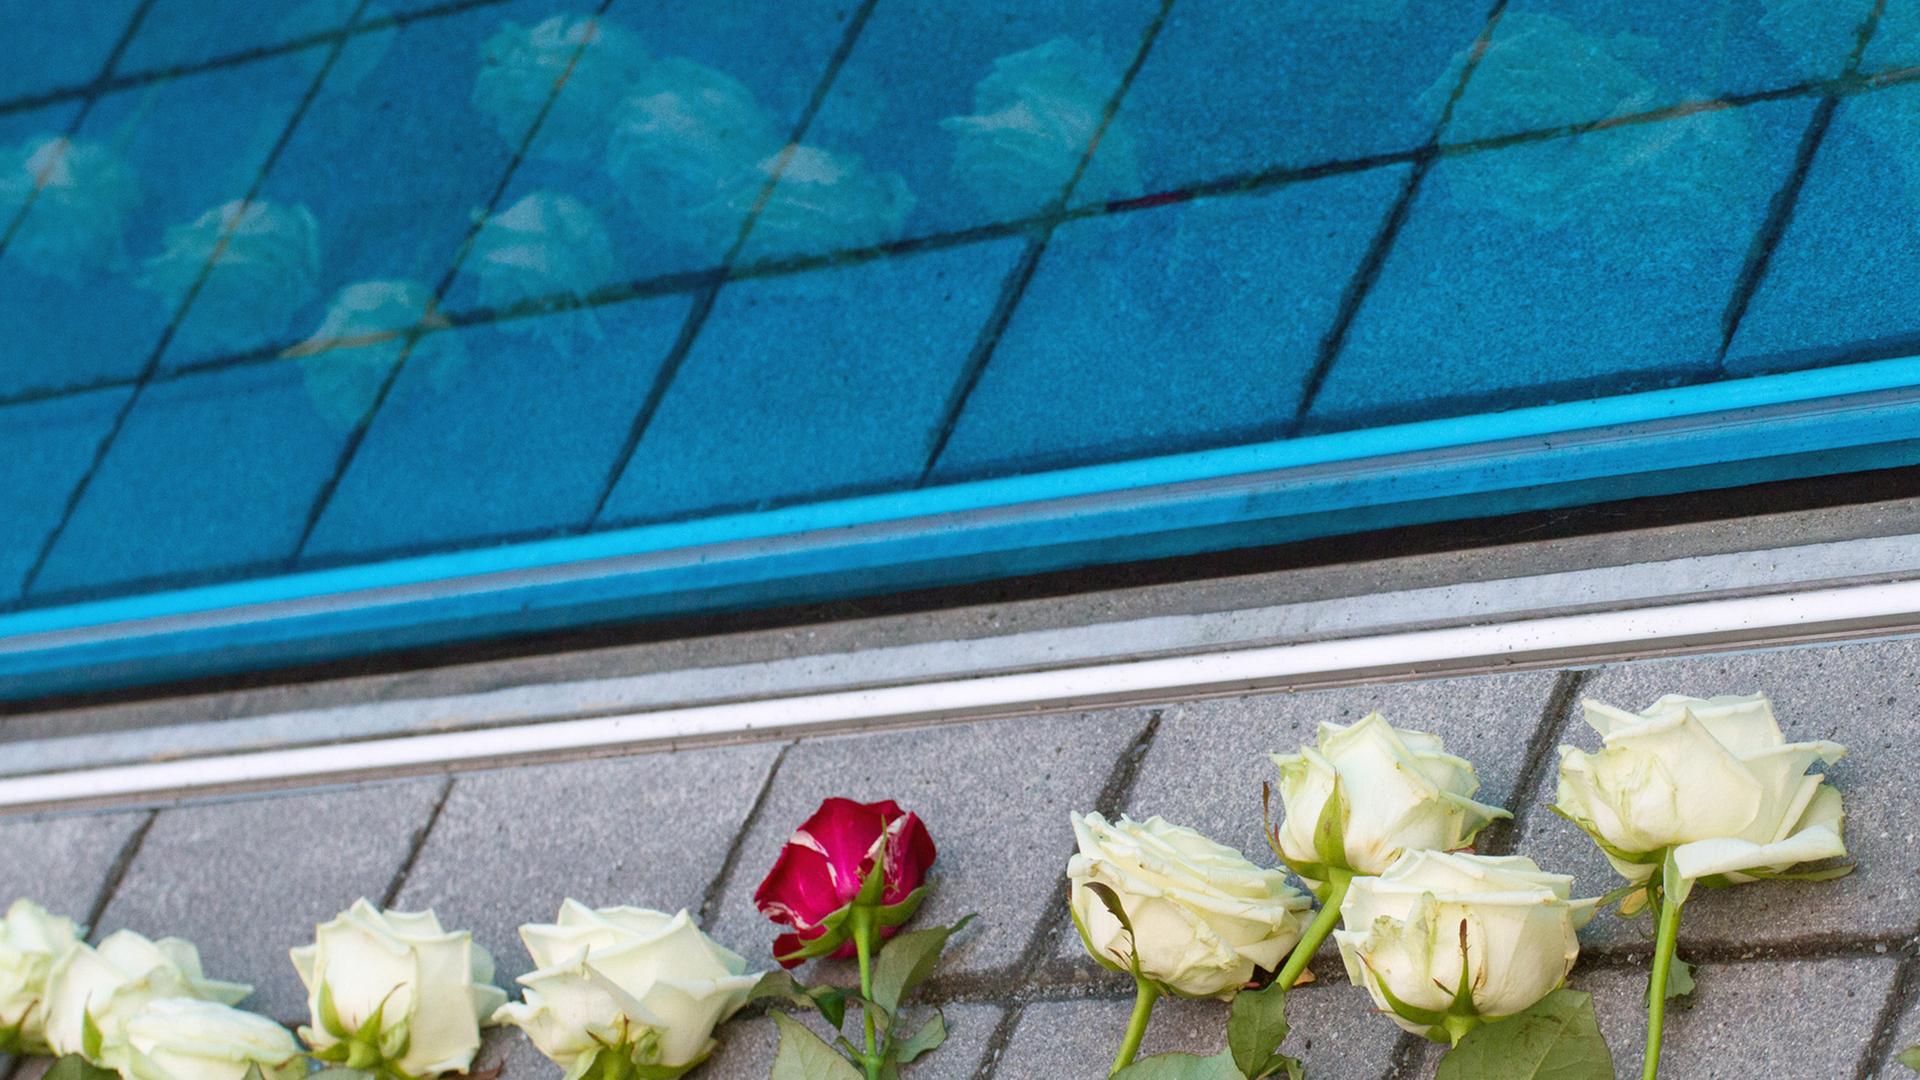 Rosen liegen am Mahnmal für die Opfer der nationalsozialistischen "Euthanasie-Morde" in Berlin-Tiergarten.